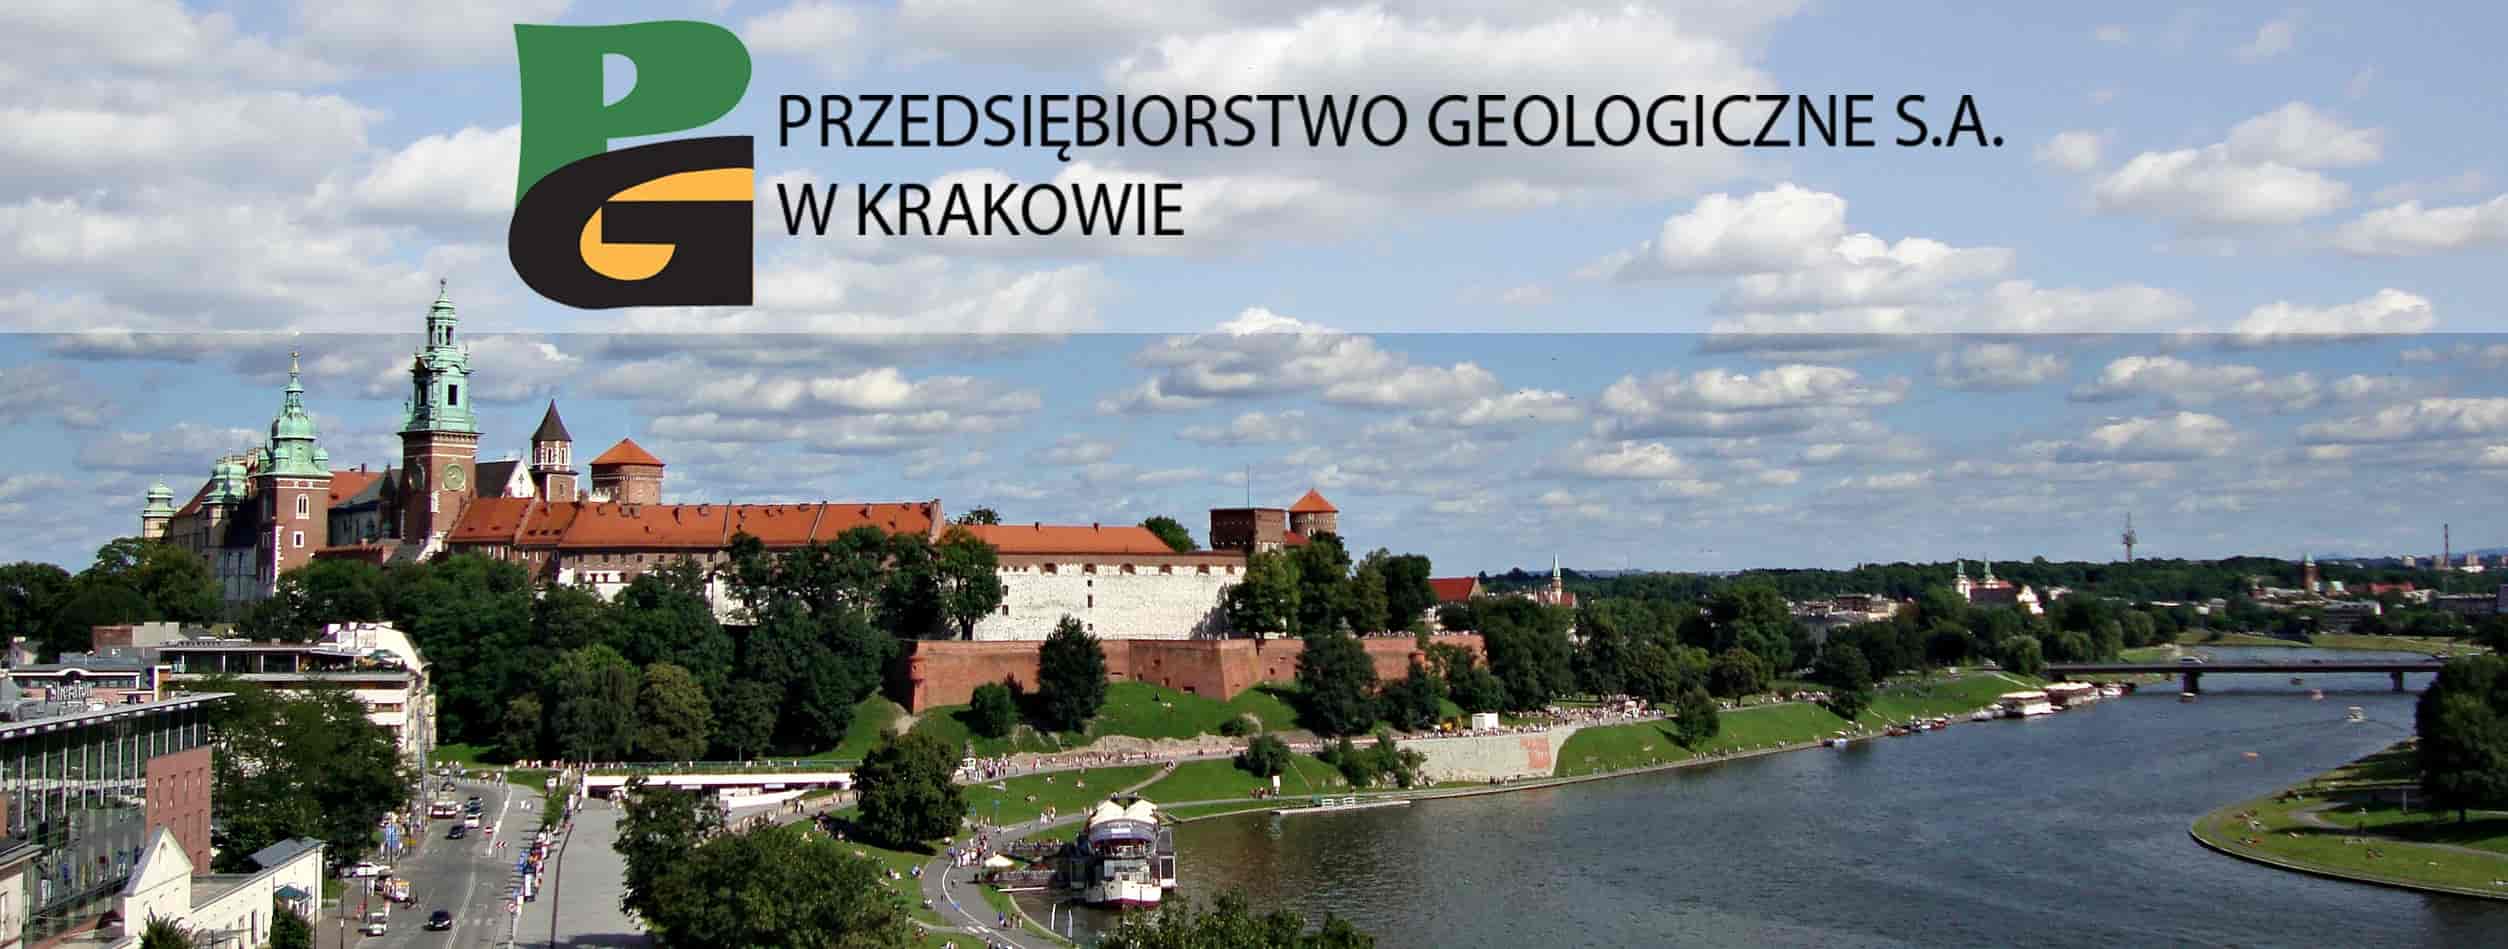 Geologia - PGSA Kraków - Przedsiębiorstwo Geologiczne S.A.